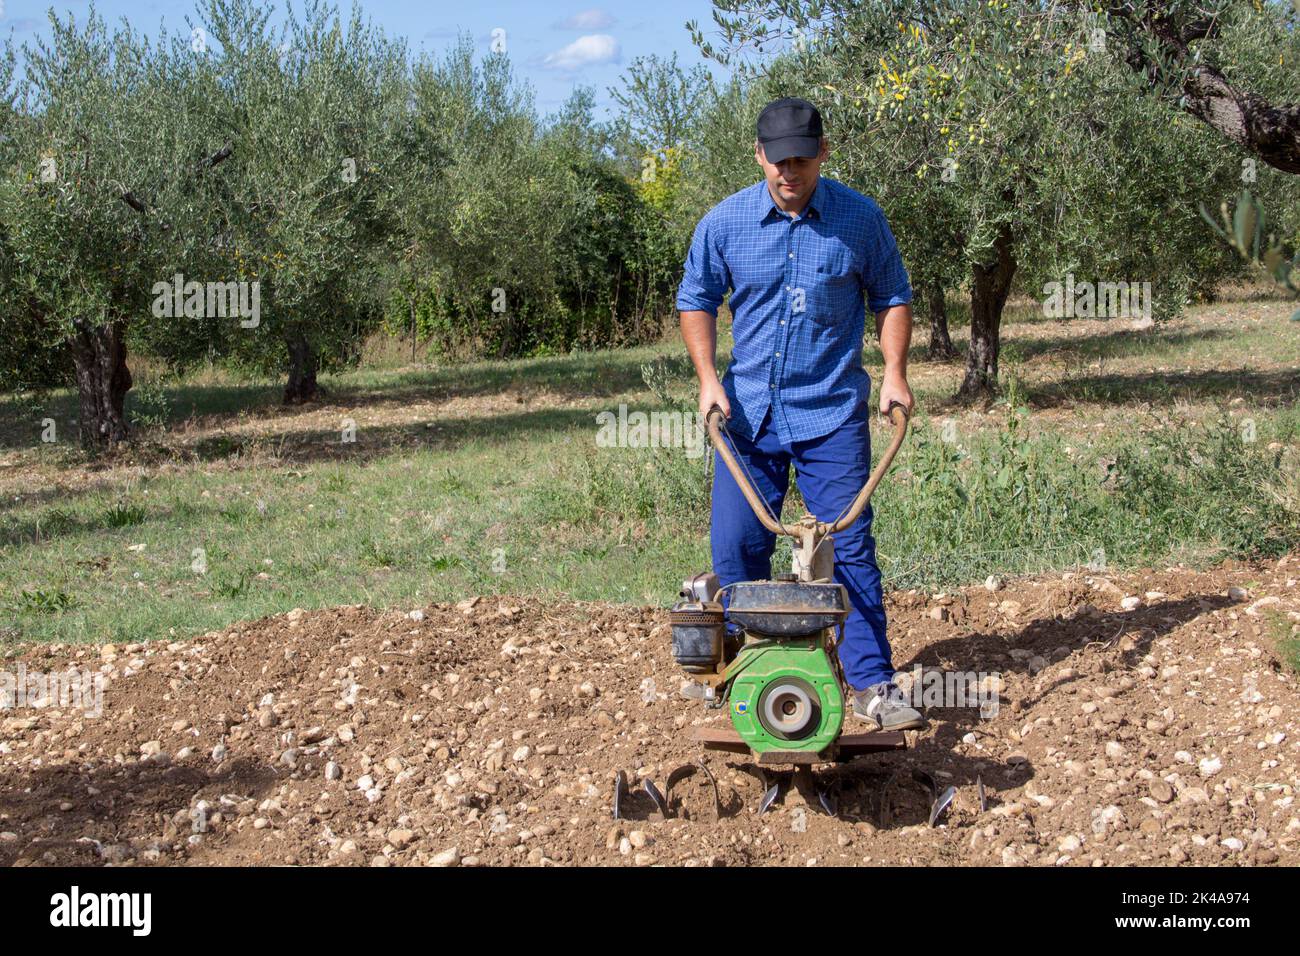 Imagen de un agricultor que con un labrador de mano prepara la tierra para cultivar su huerto. Foto de stock